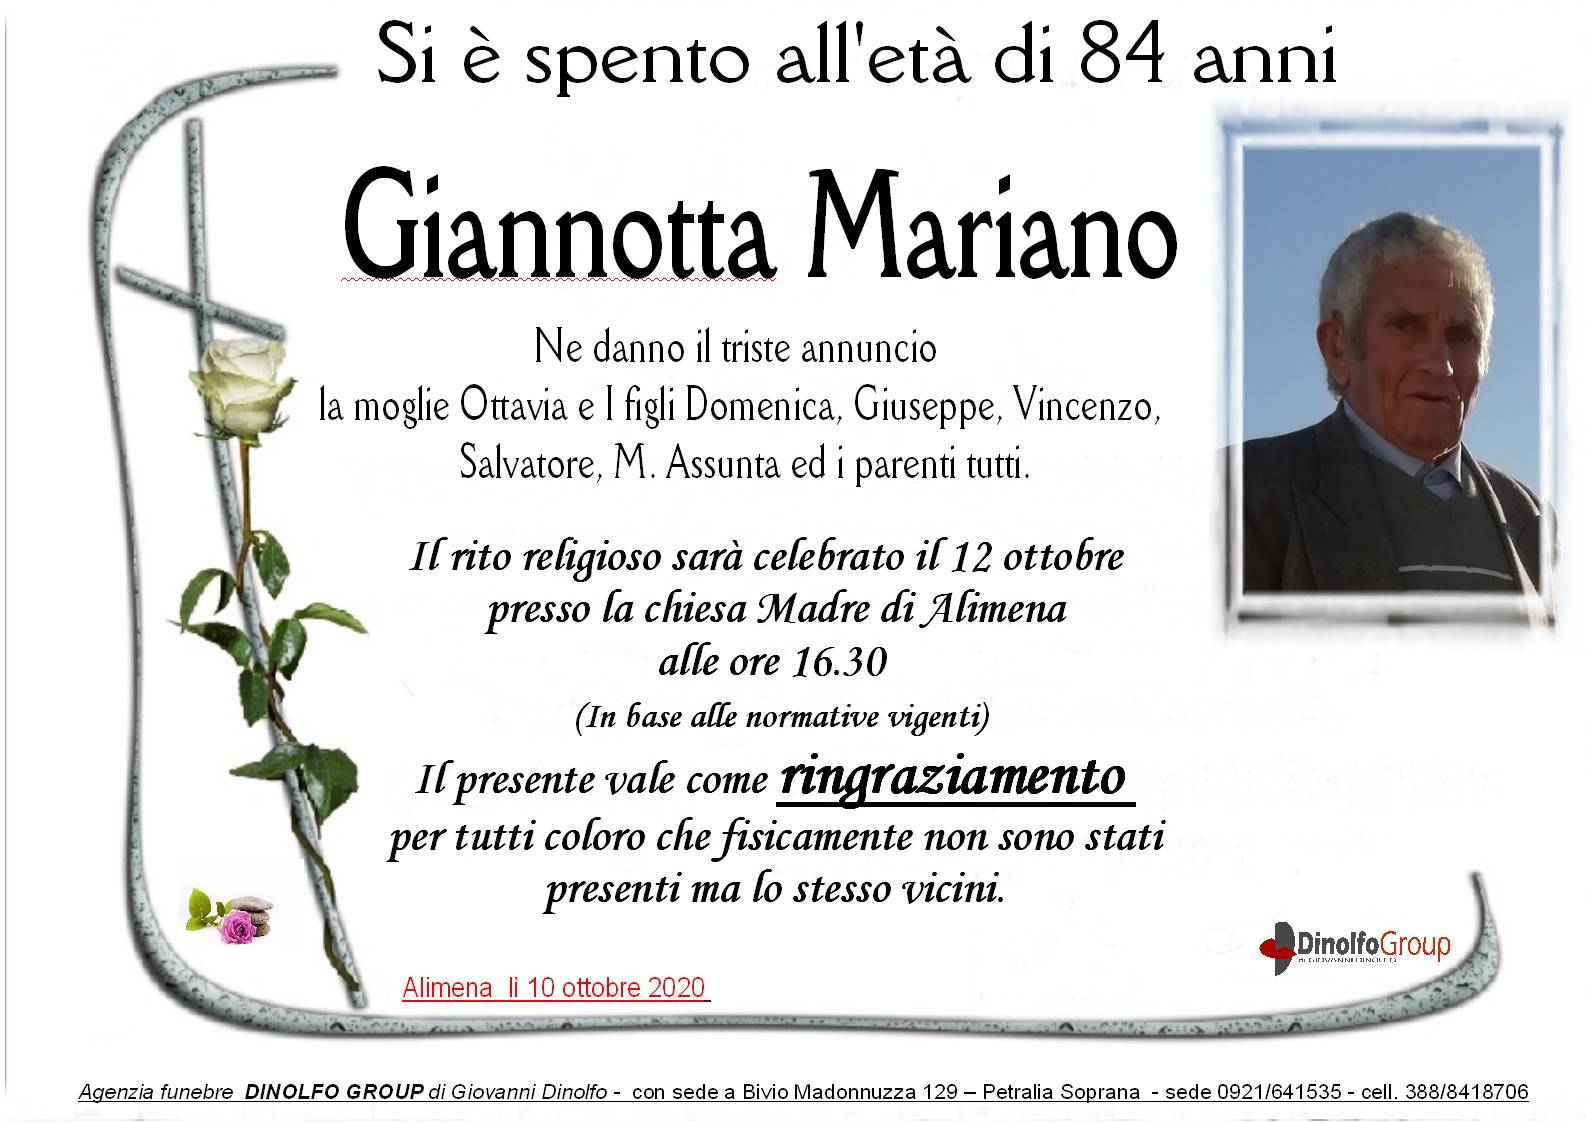 Mariano Giannotta